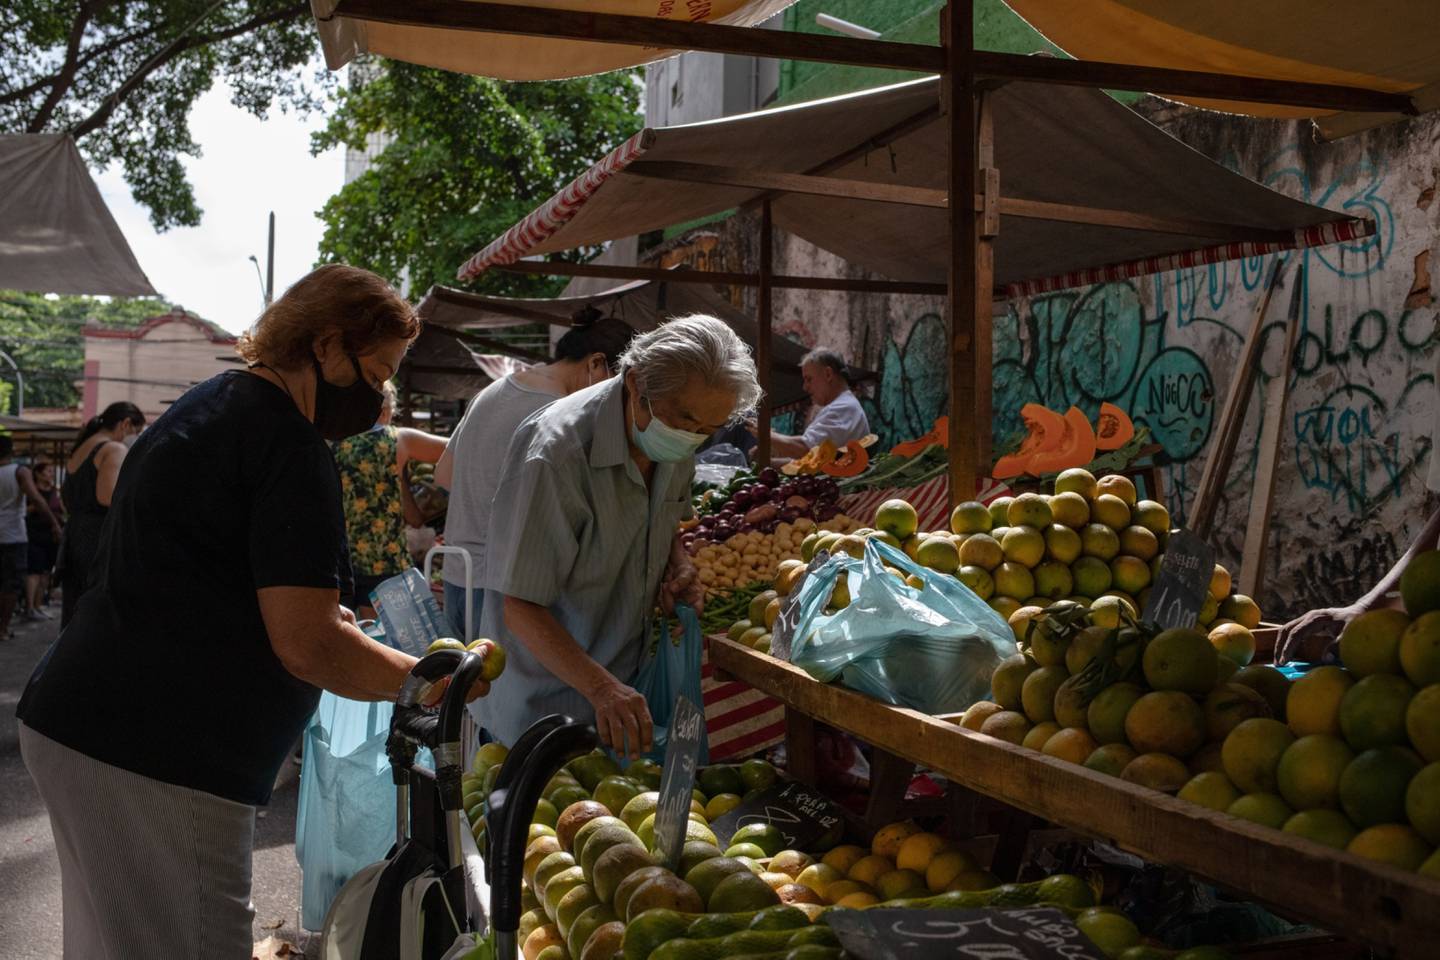 Los compradores buscan productos en un mercado al aire libre en el barrio de Tijuca de Río de Janeiro, Brasil, el martes 5 de abril de 2022.